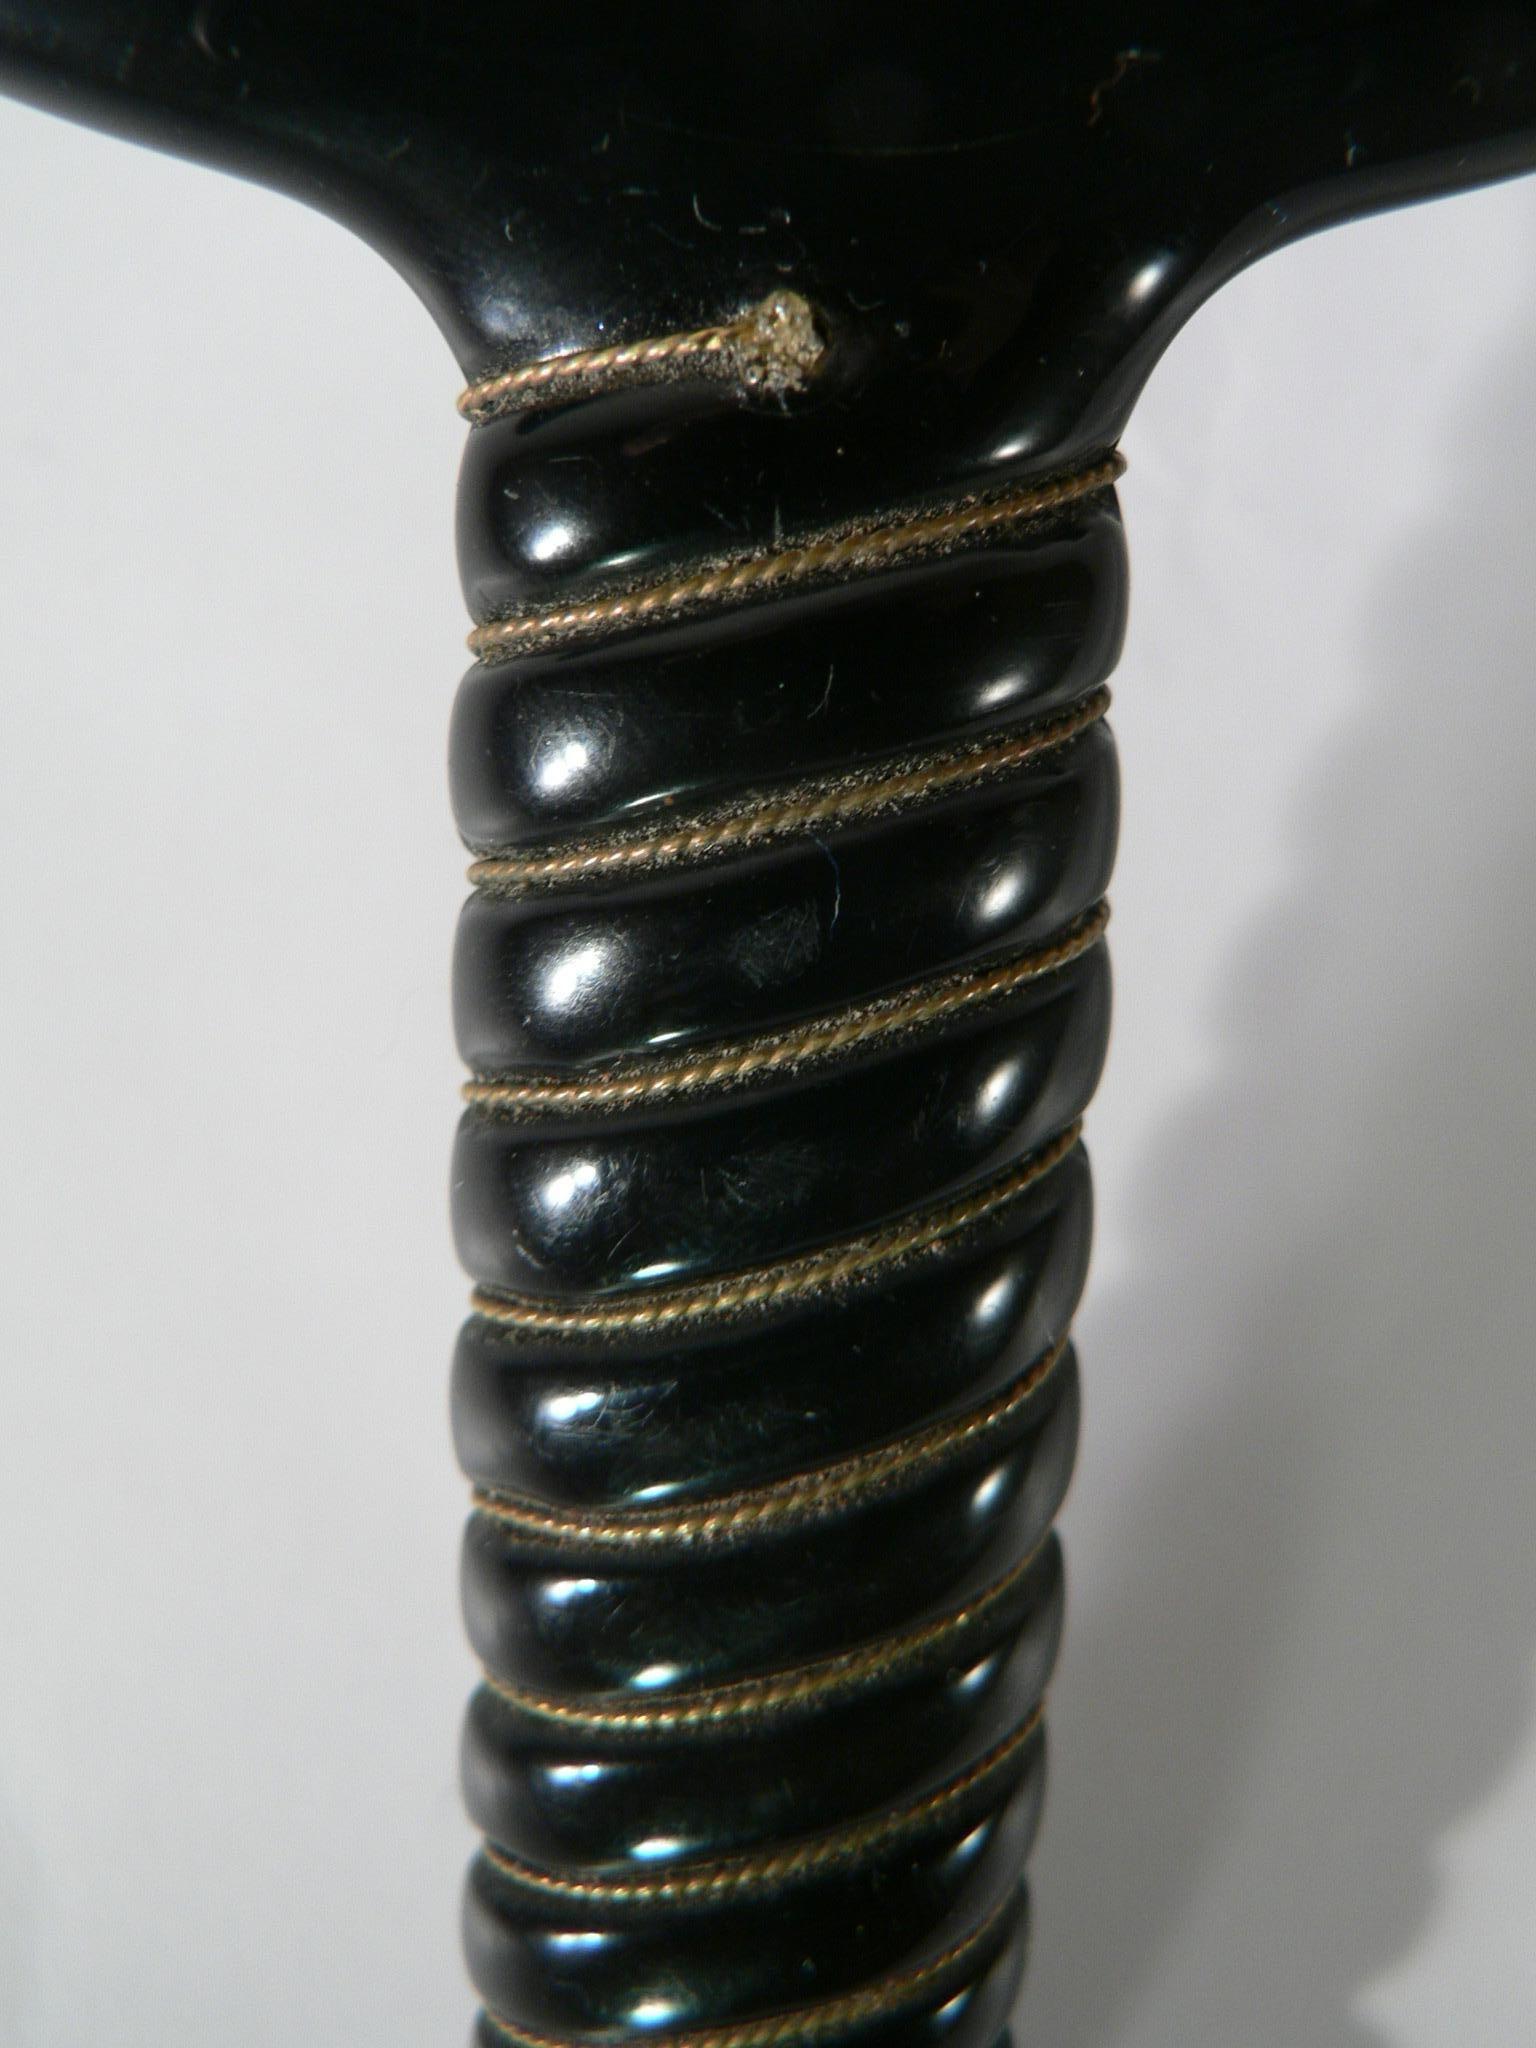 Ein eleganter schwarzer Handspiegel aus Bakelit aus den 1950er Jahren. Doppelseitig, eine davon mit Vergrößerungsspiegeln. Hübsche Details am Griff, mit einem Golddraht, der den Griff umgibt.